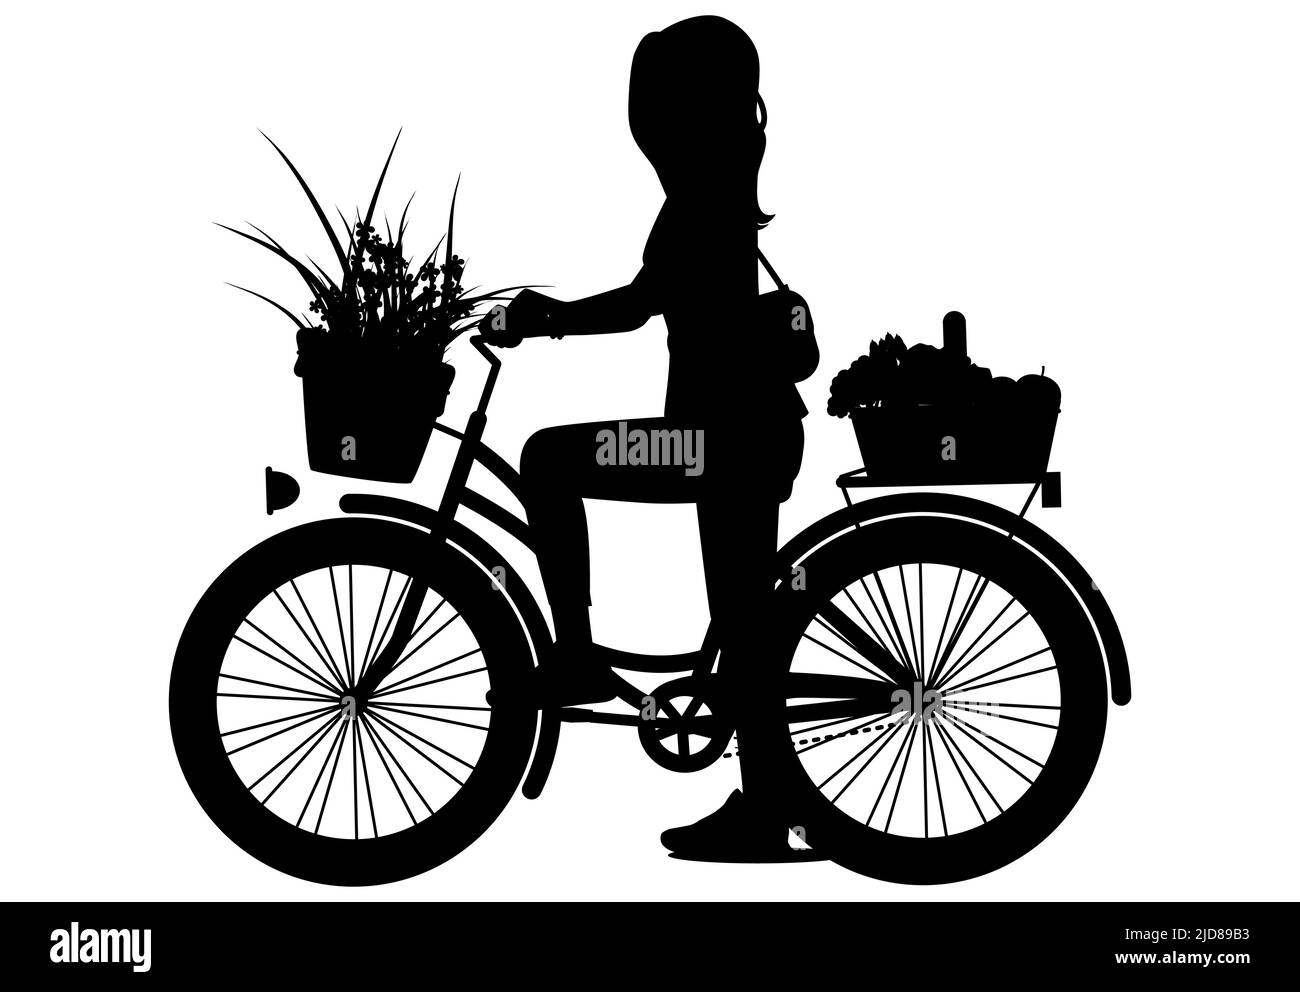 Ein Mädchen fährt ein Fahrrad. Silhouette Radfahrer. Vektorgrafik. Stock Vektor